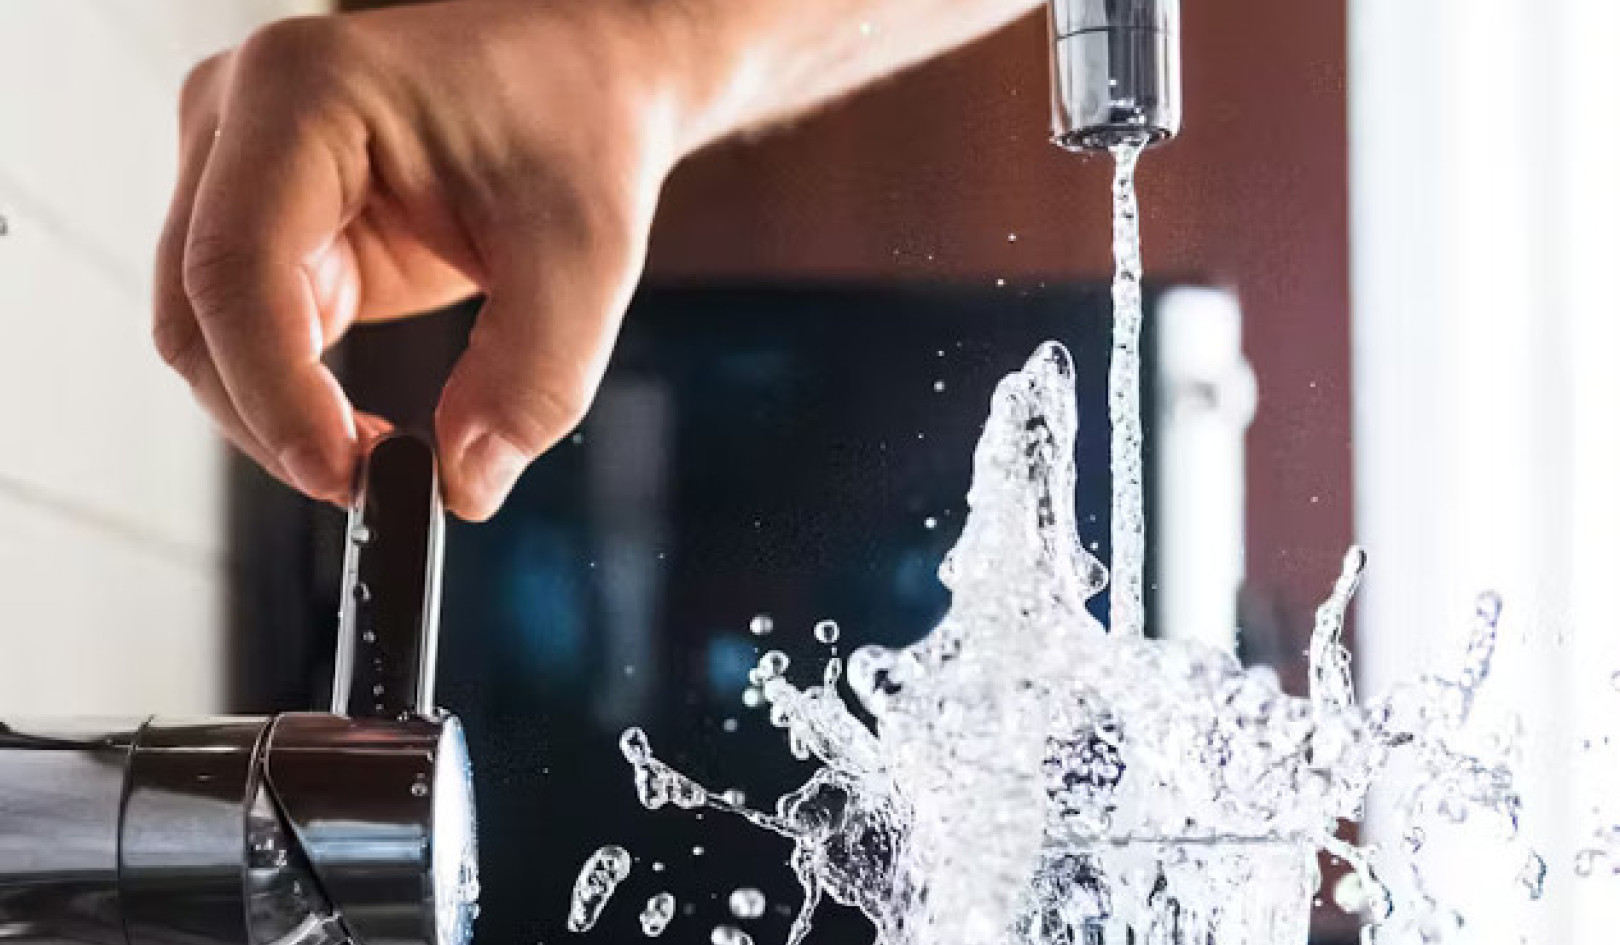 हानिकारक 'हमेशा के लिए रसायनों' को फ़िल्टर करना: आपके पीने के पानी को साफ़ करने के तरीके